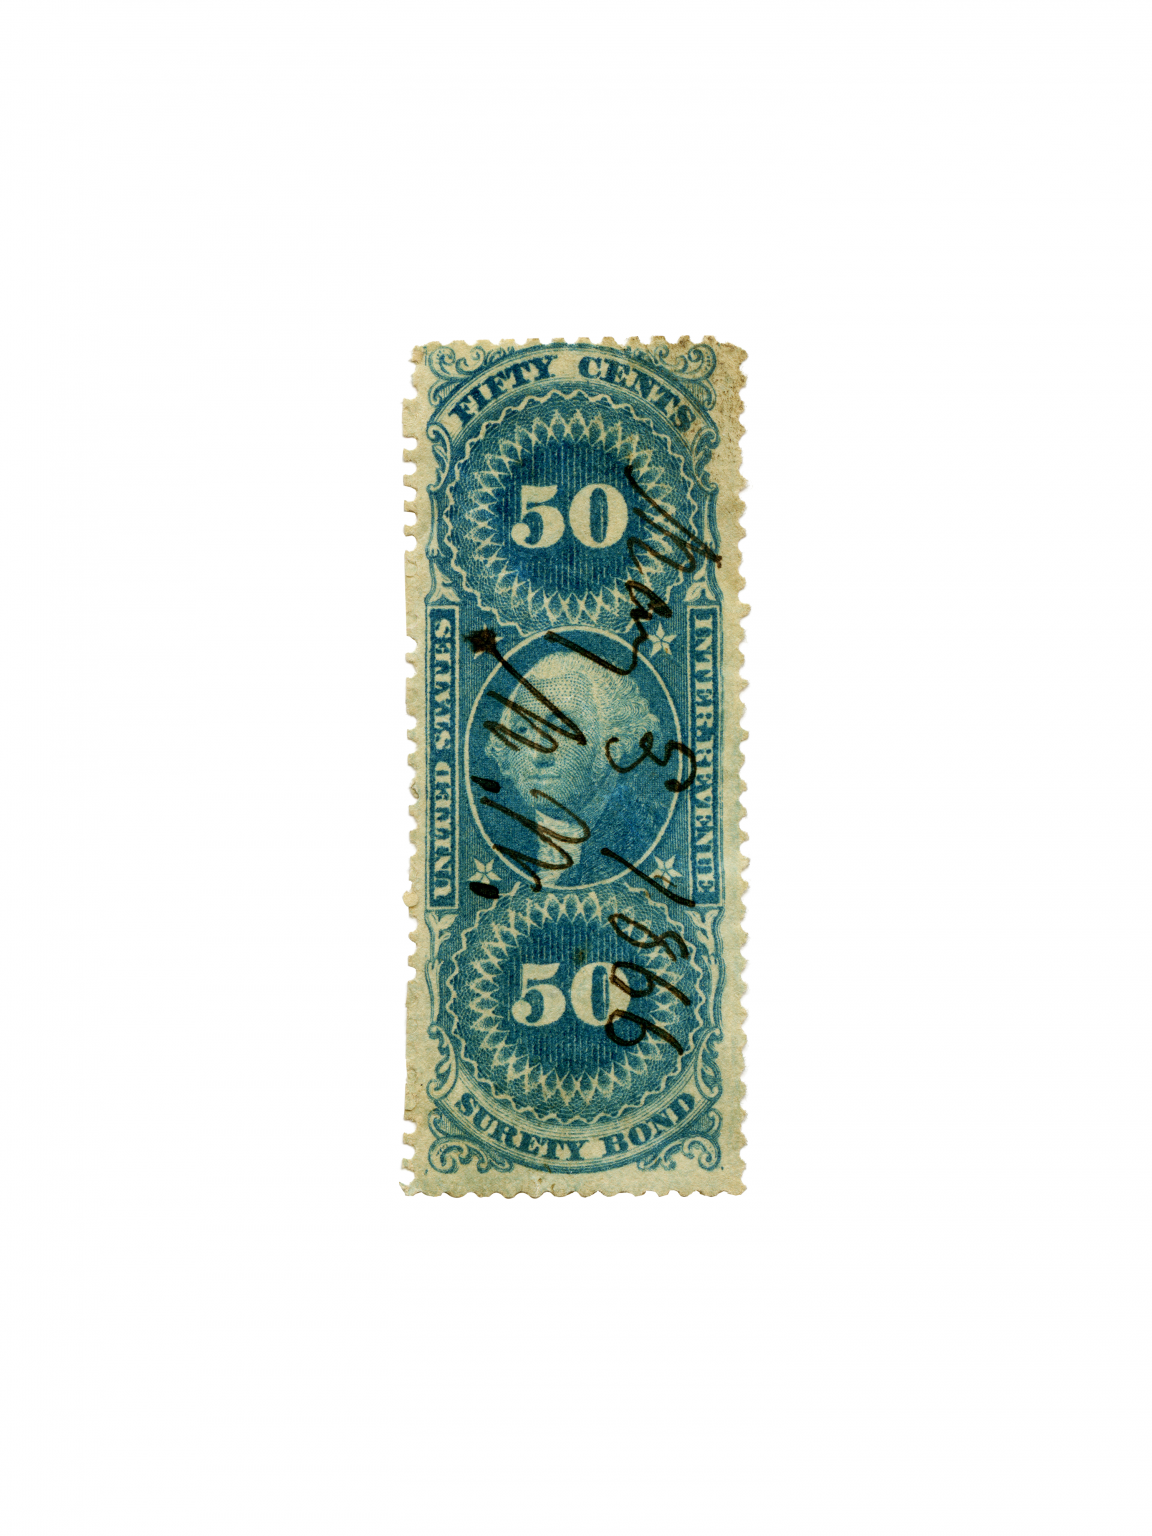 U.S. Revenue Stamp